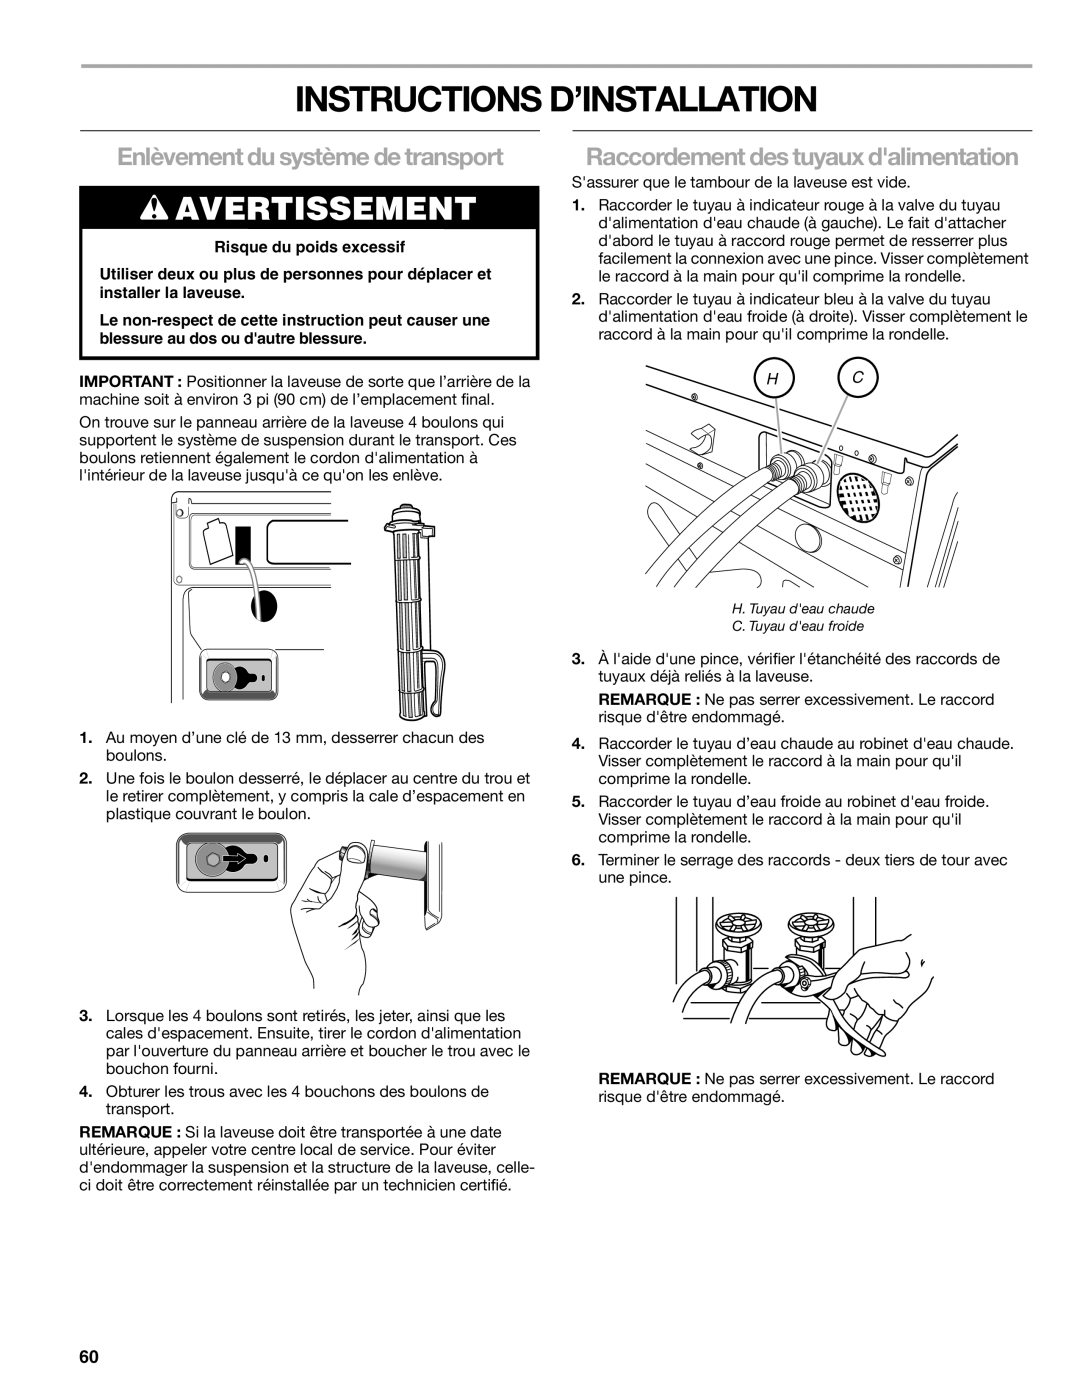 Sears 110.4779* Instructions D’Installation, Enlèvement du système de transport, Raccordement des tuyaux dalimentation 